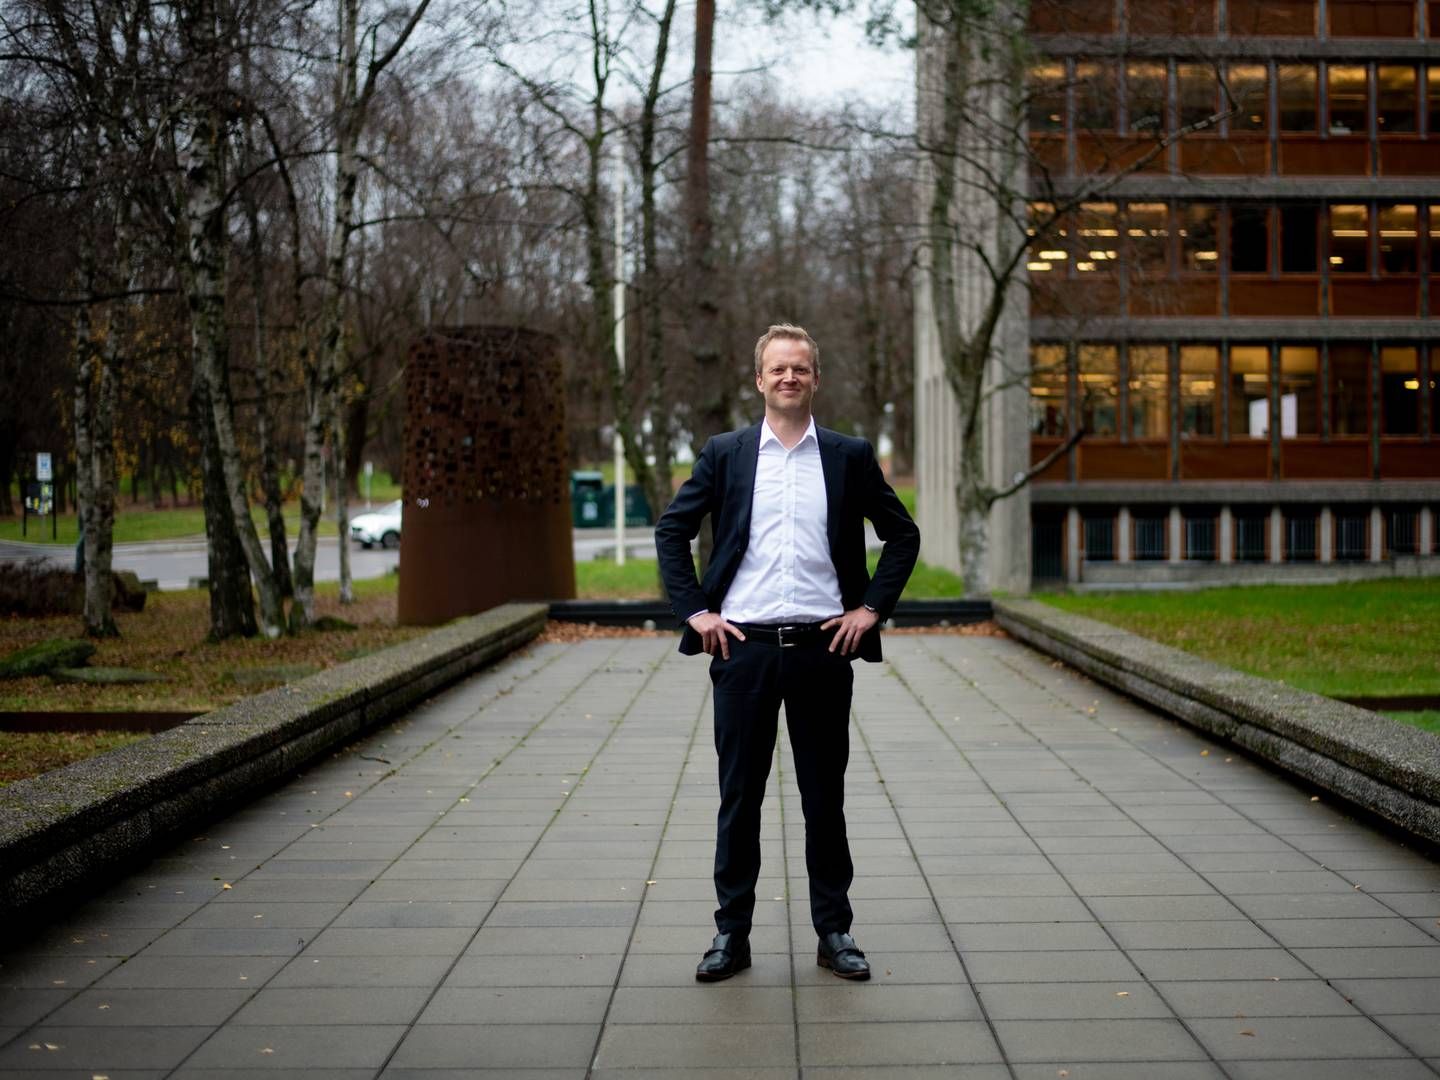 «STORE MULIGHETER»: – Det er enorme verdier som vi har mulighet til å skape for Norge - i Norge, sier Leif Rune Skymoen om helsenæringen i Norge. | Foto: Vidar Sandnes